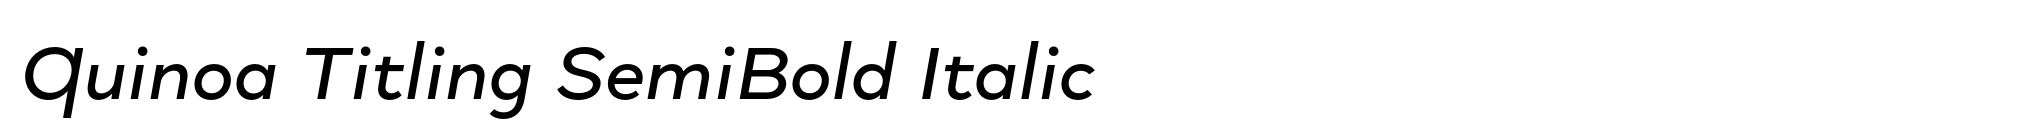 Quinoa Titling SemiBold Italic image